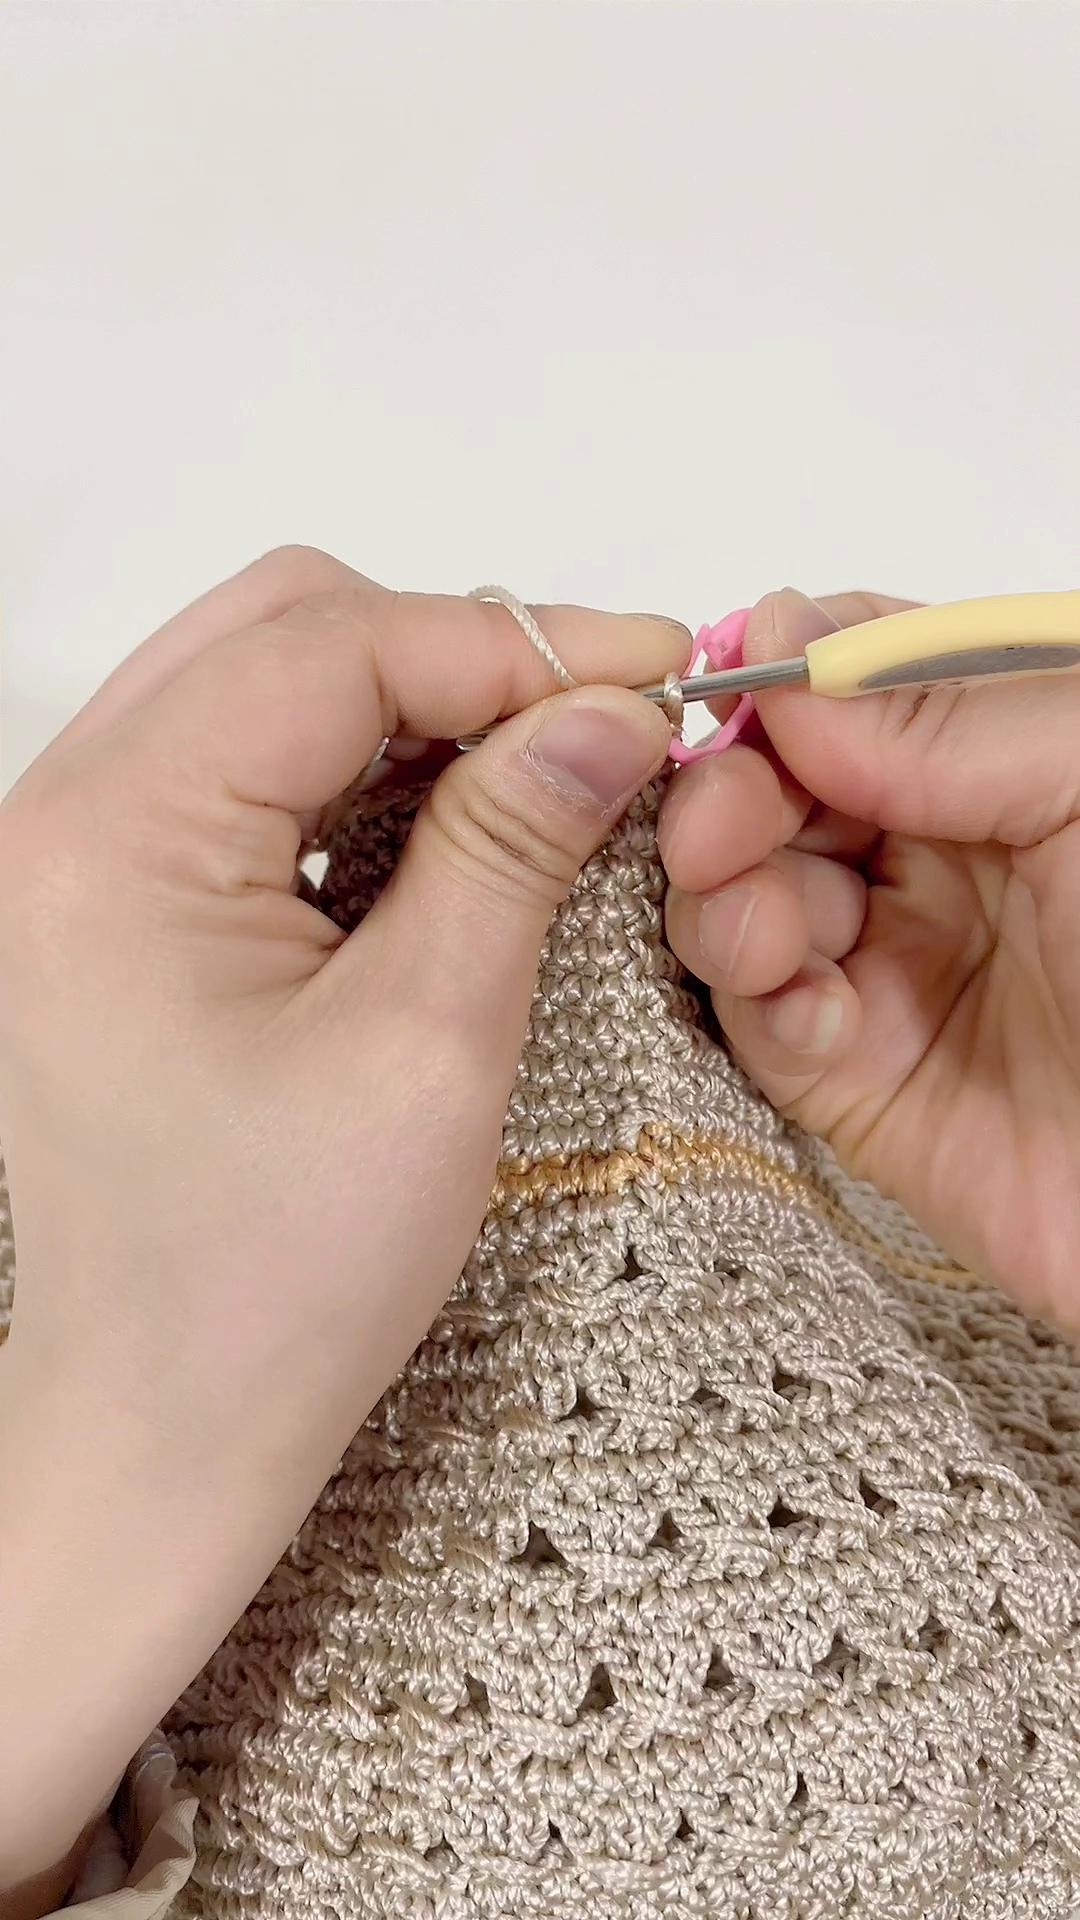 雅馨绣坊手工编织镂空珍珠遮阳帽教程：第五集图解和视频